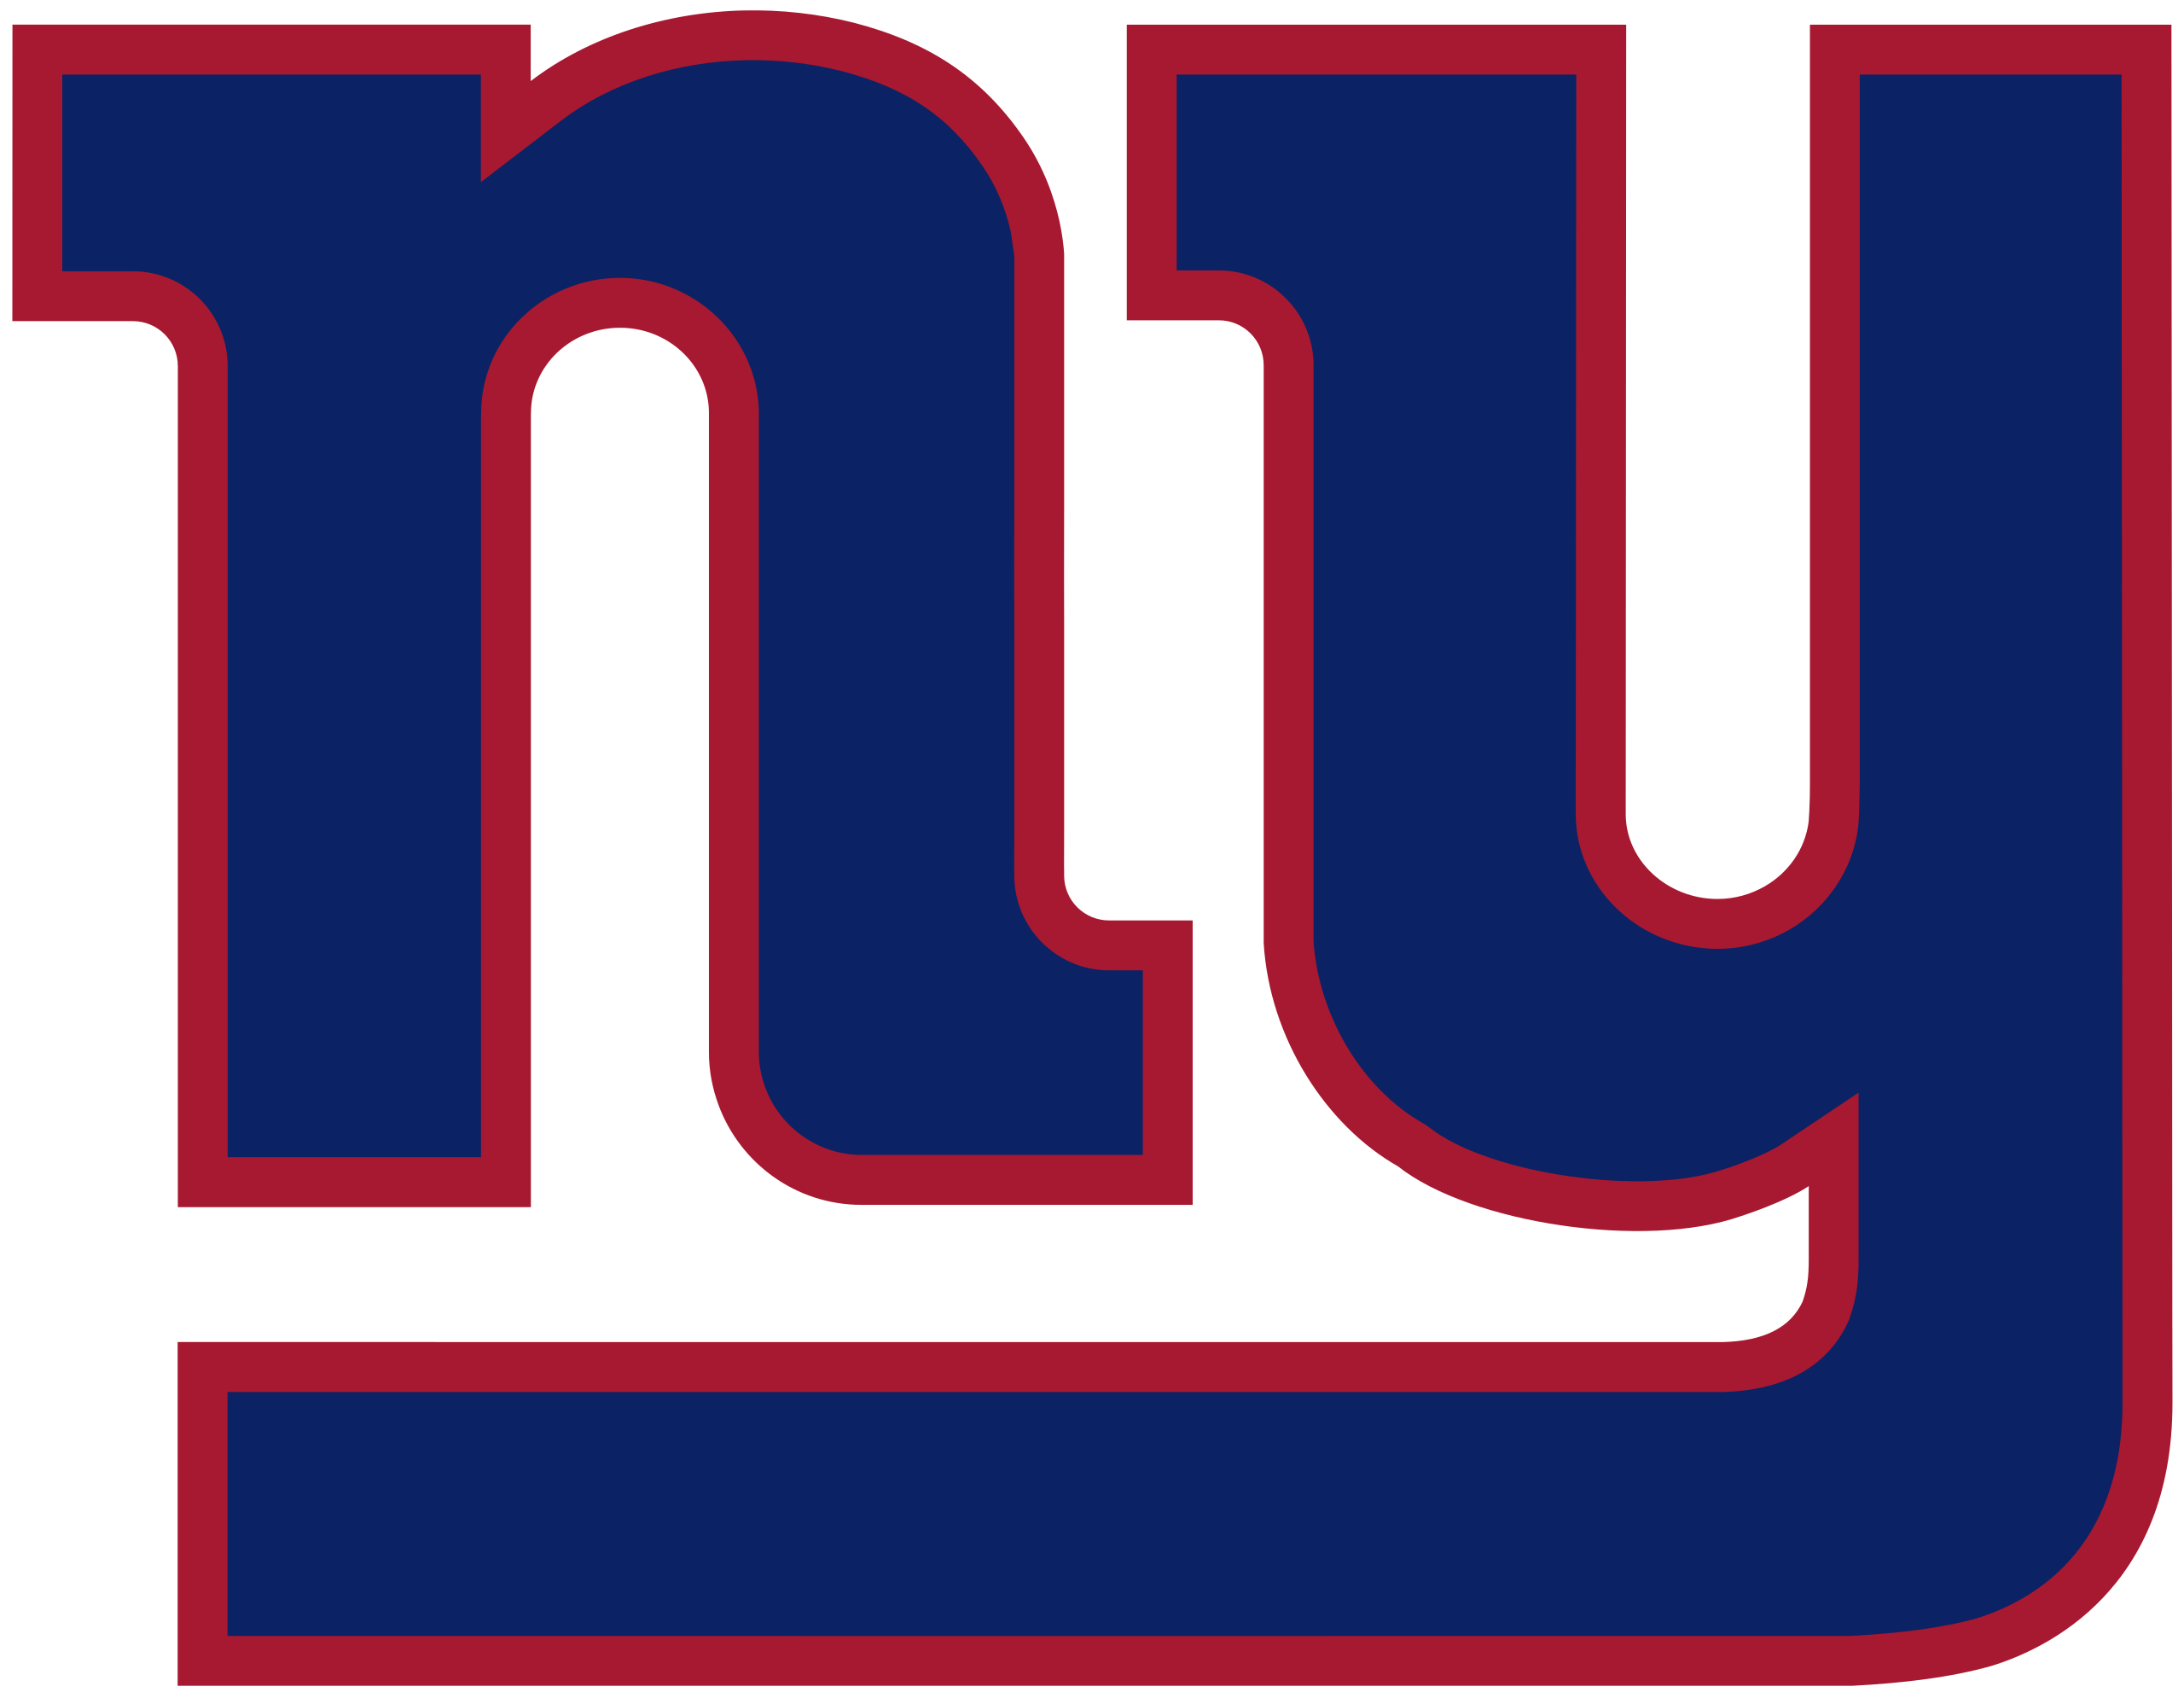 The New York Giants ThePicks